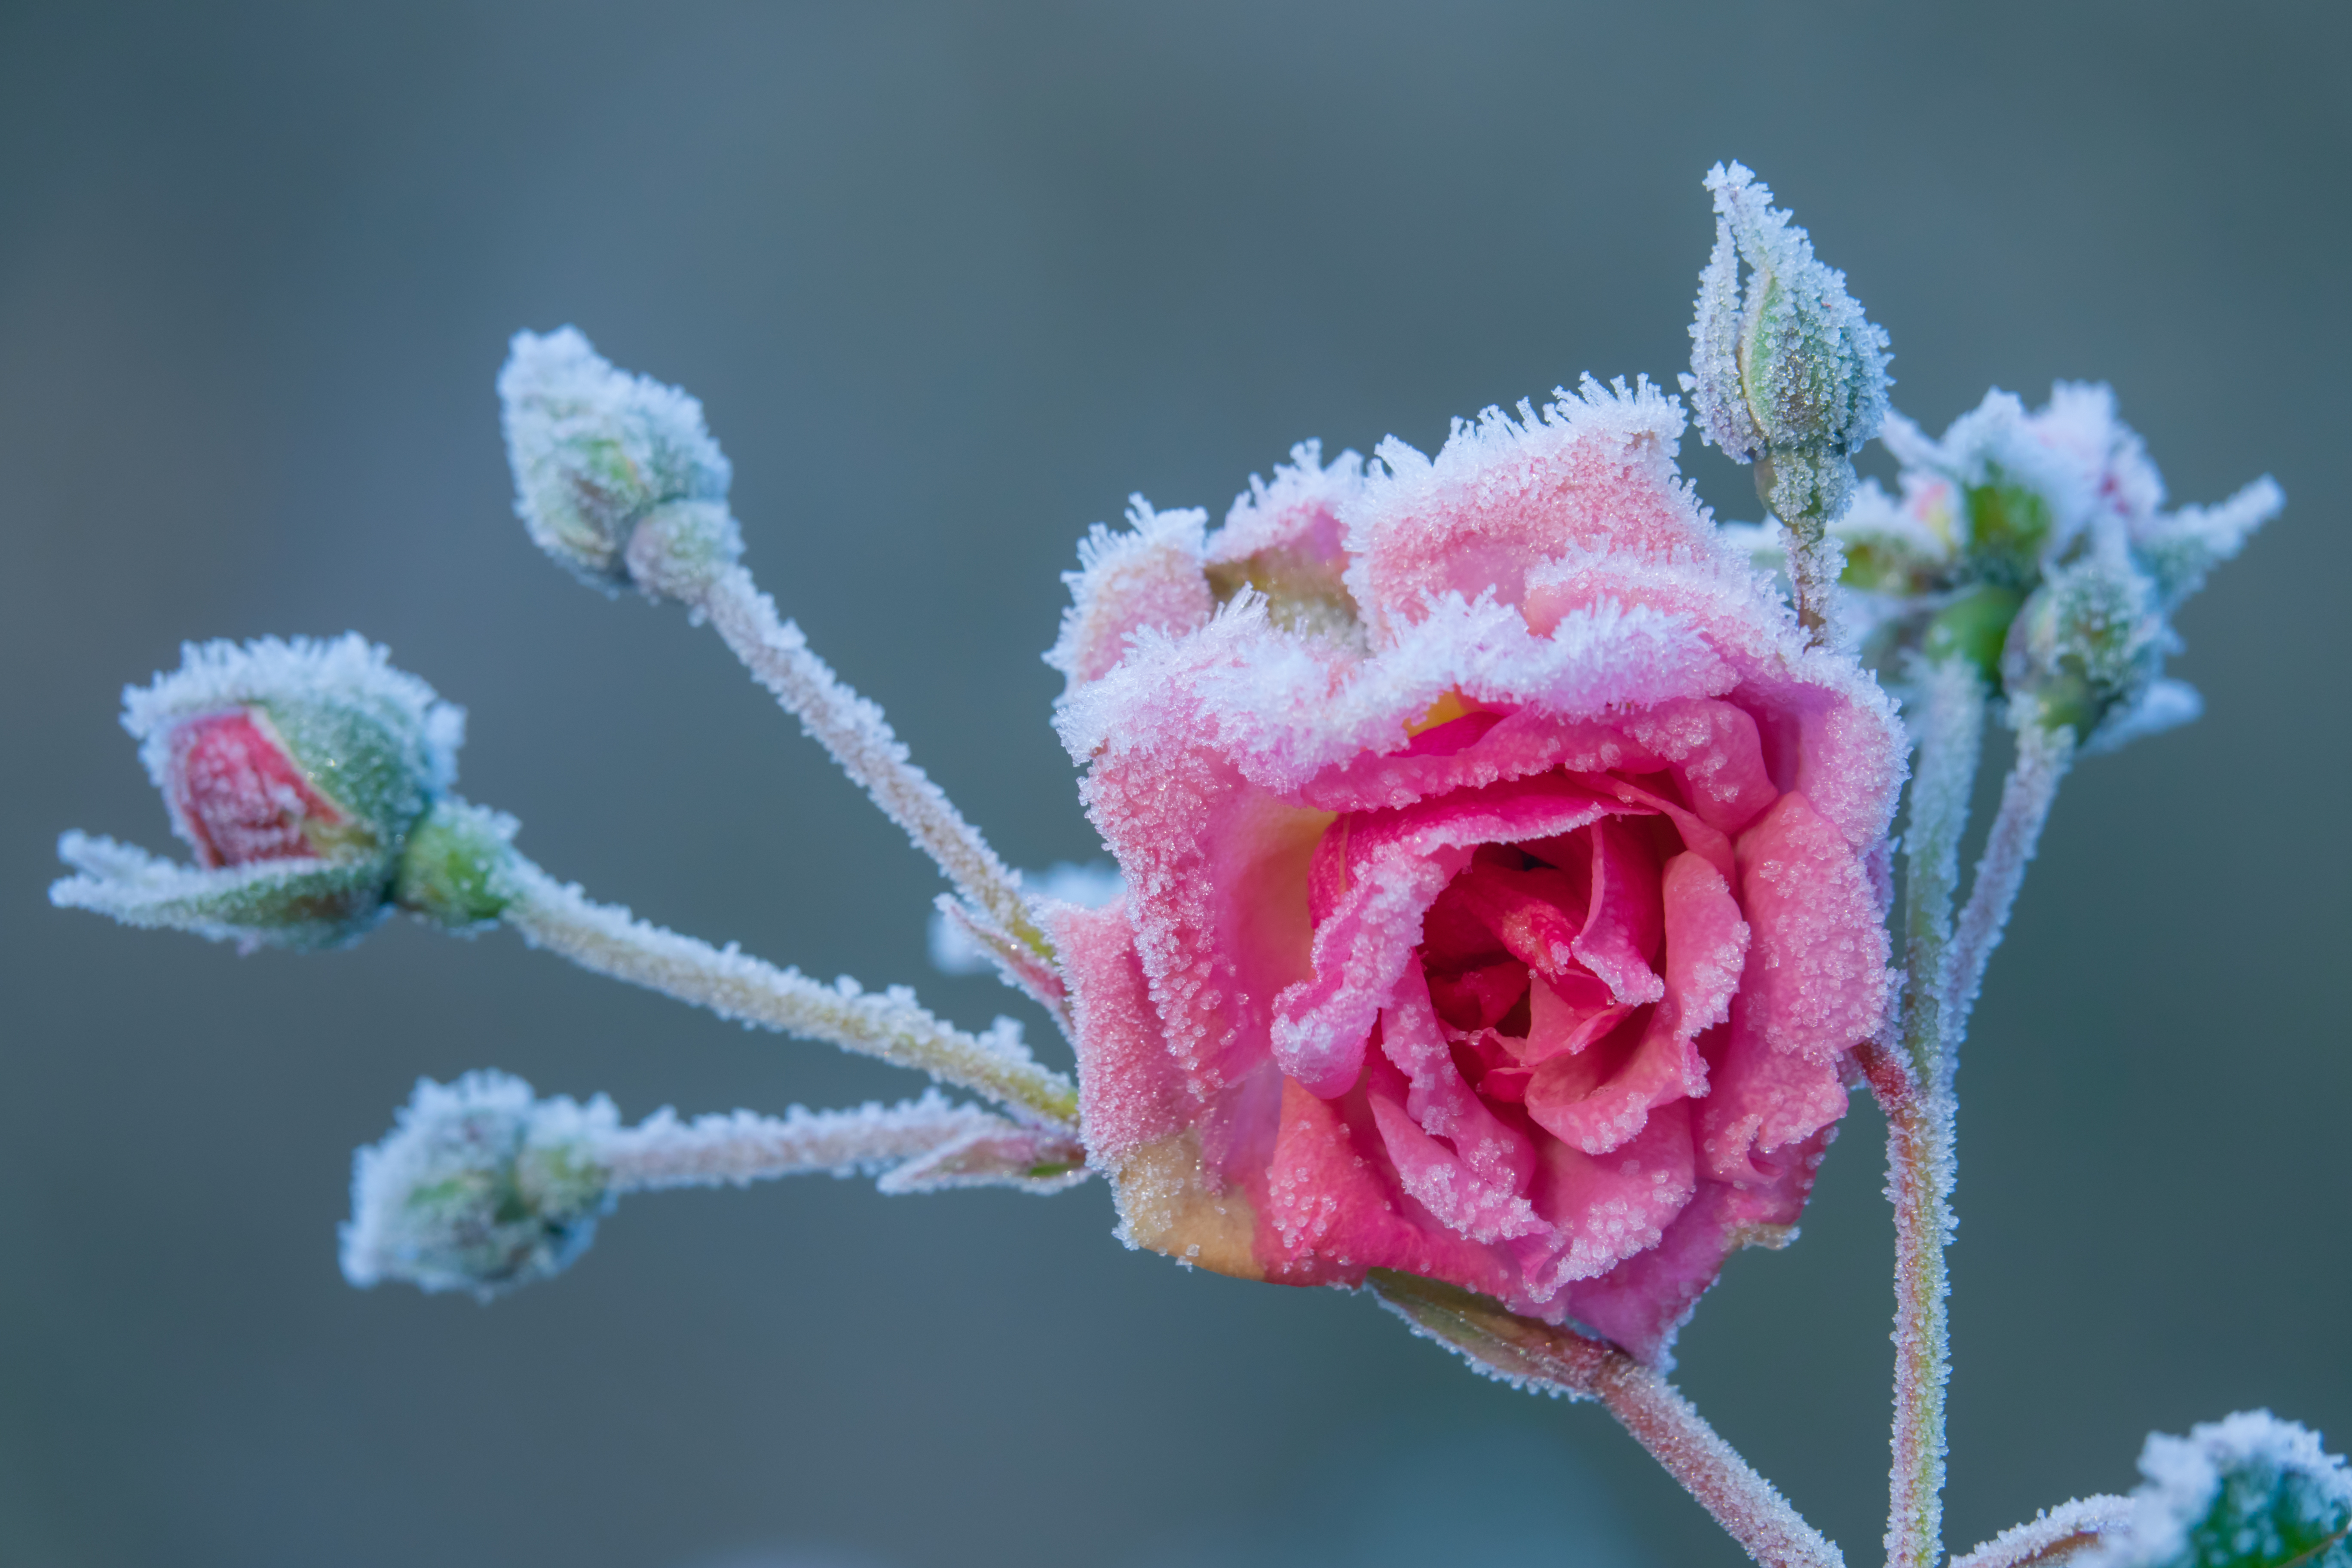 Frost on flower